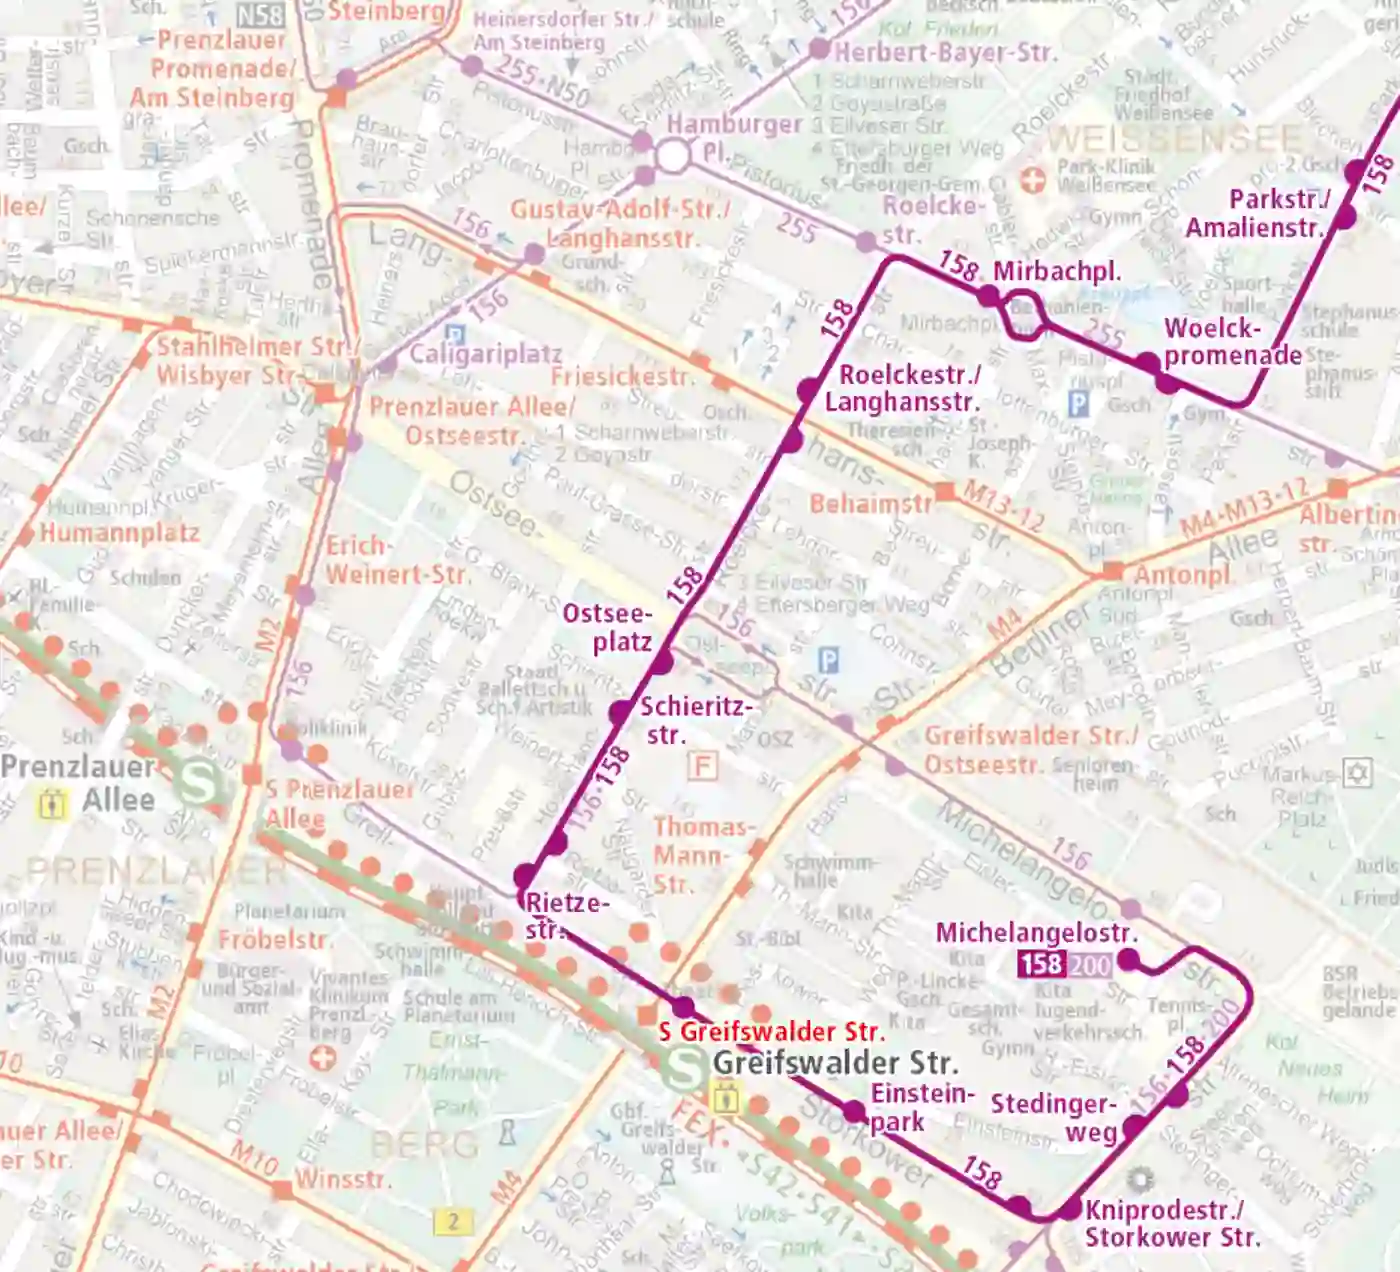 Bus Karte der Linie 158 zum Fahrplanwechsel 2021